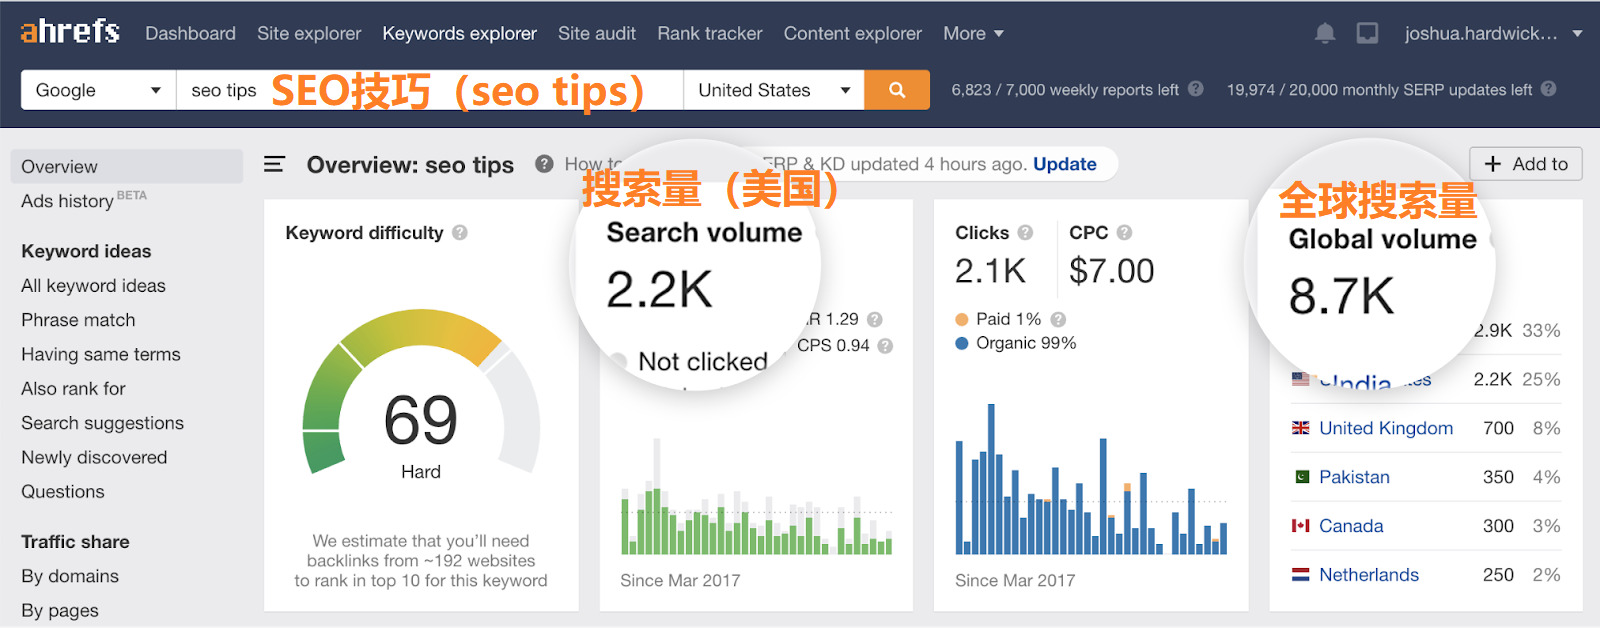 OK12 seo tips search volume